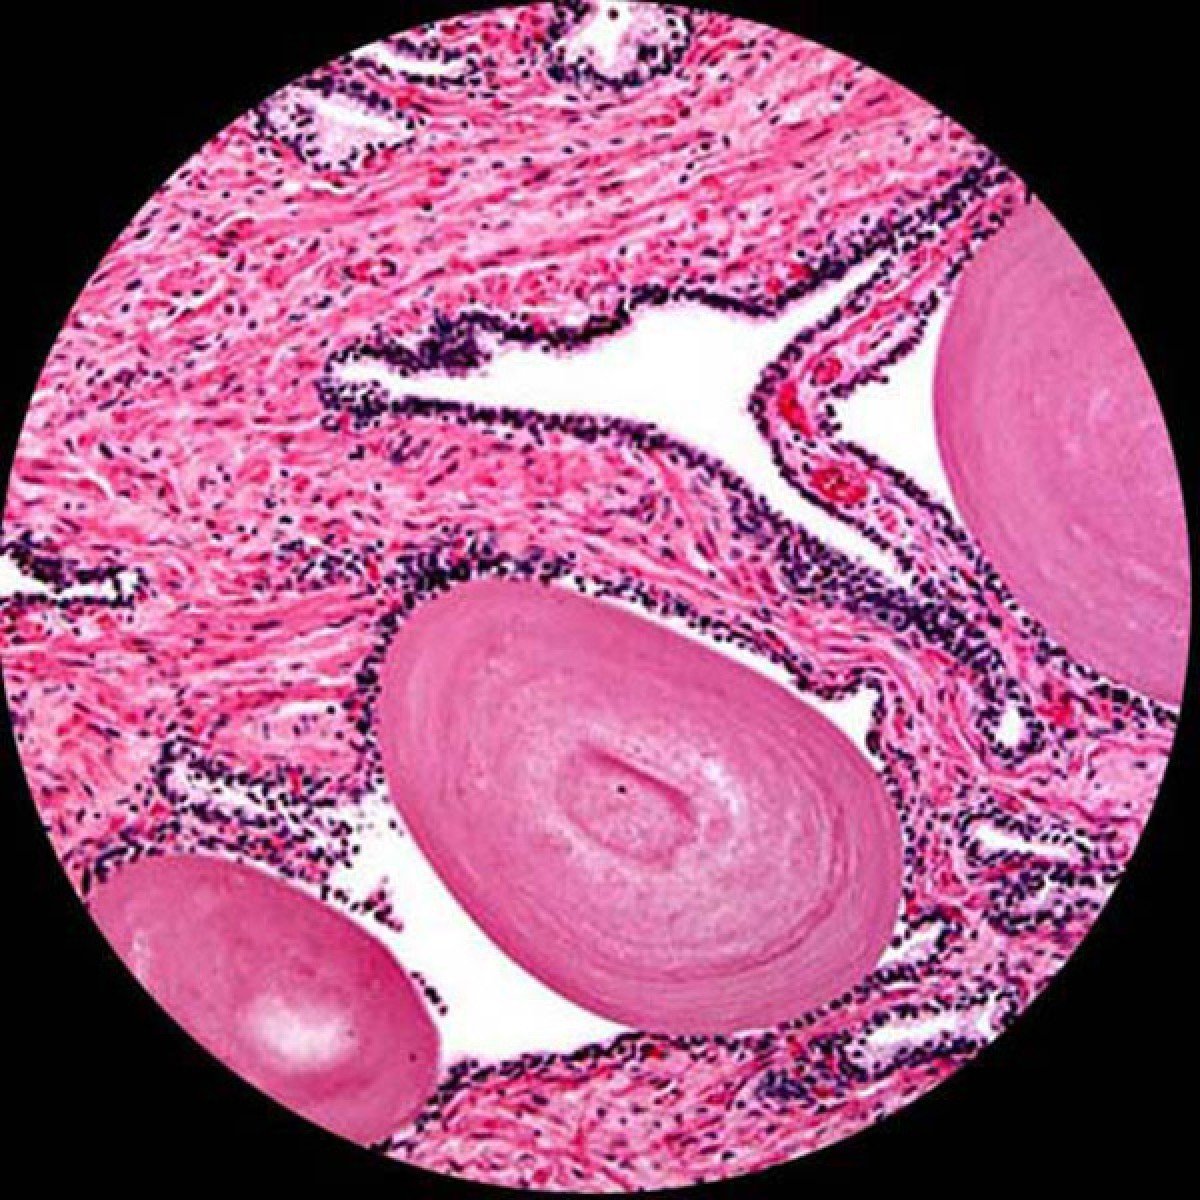 生物显微镜下观察到的细胞